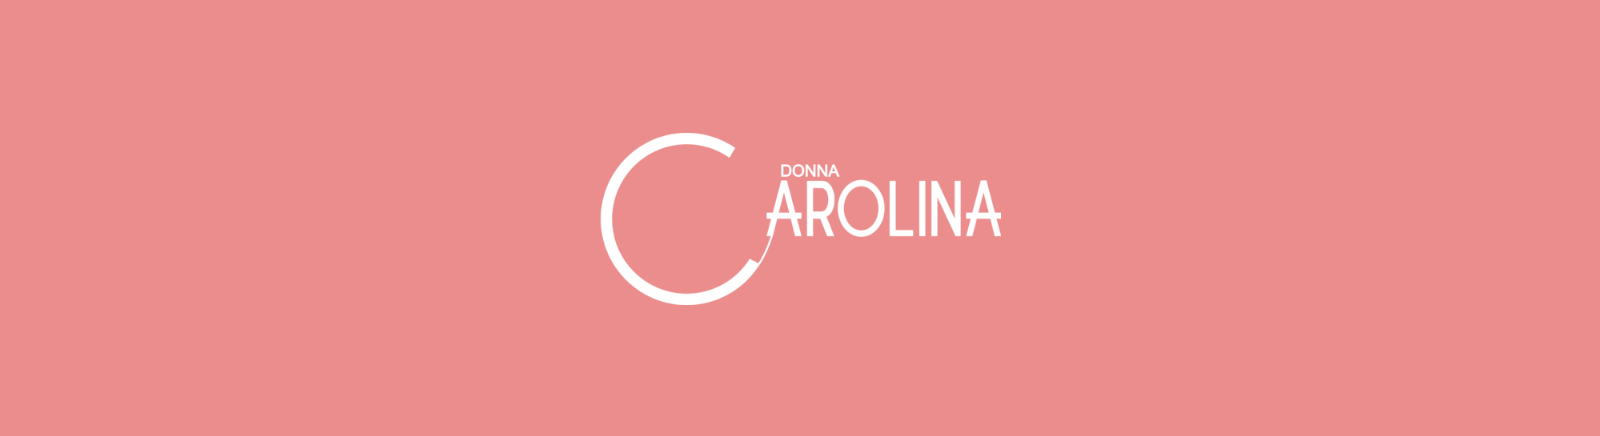 Donna Carolina Damenschuhe online kaufen im Prange Schuhe Shop